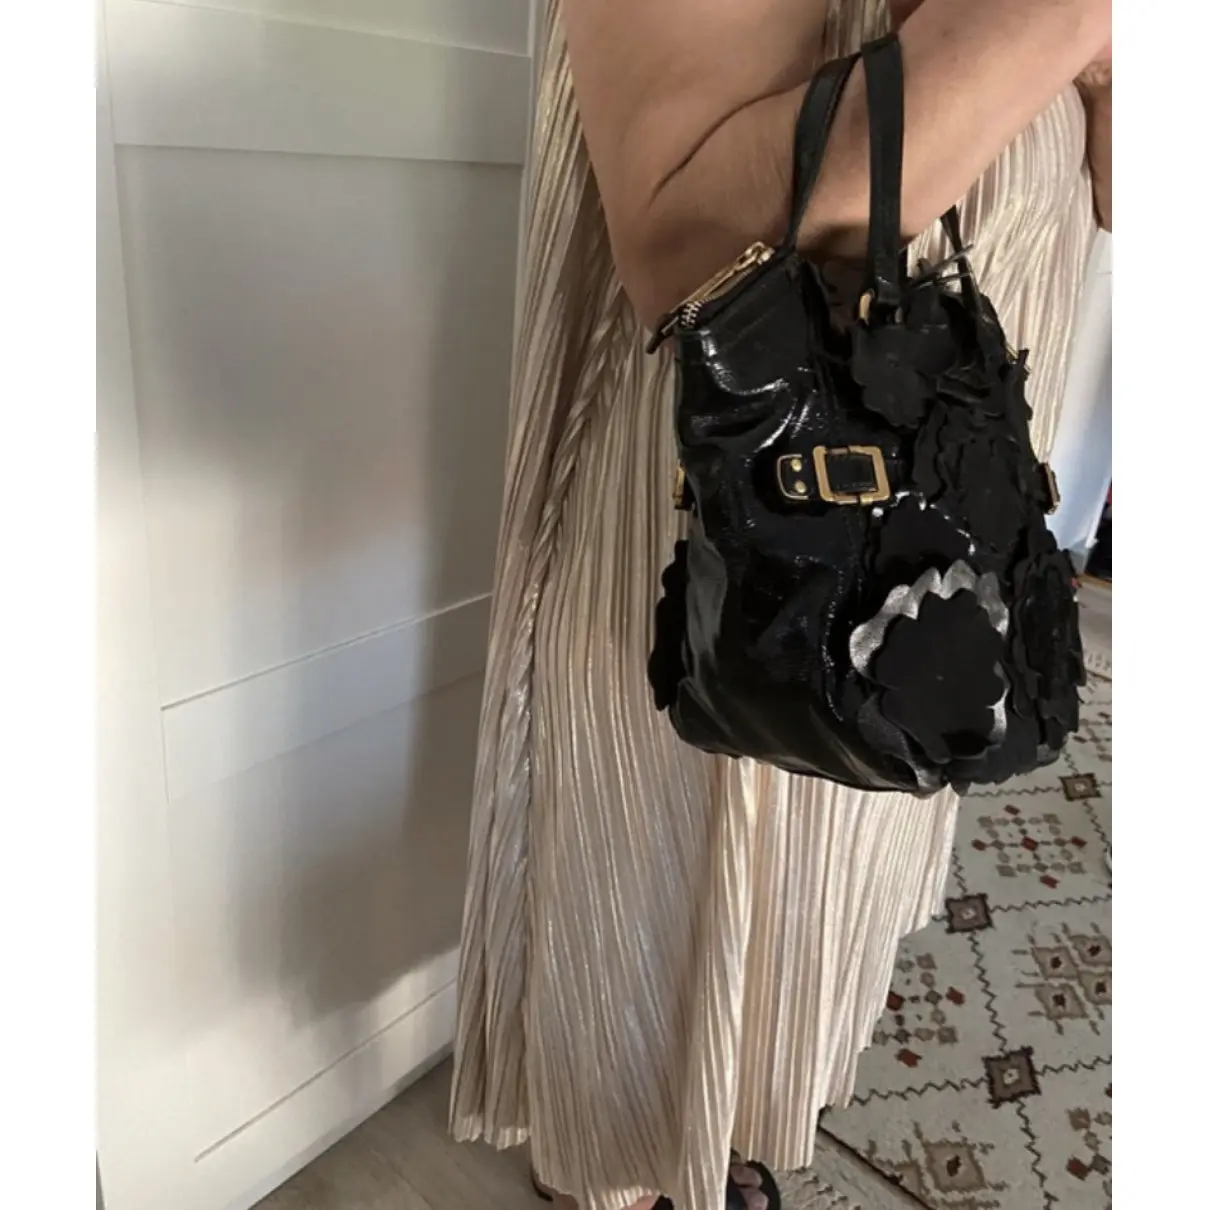 Downtown patent leather handbag Yves Saint Laurent - Vintage